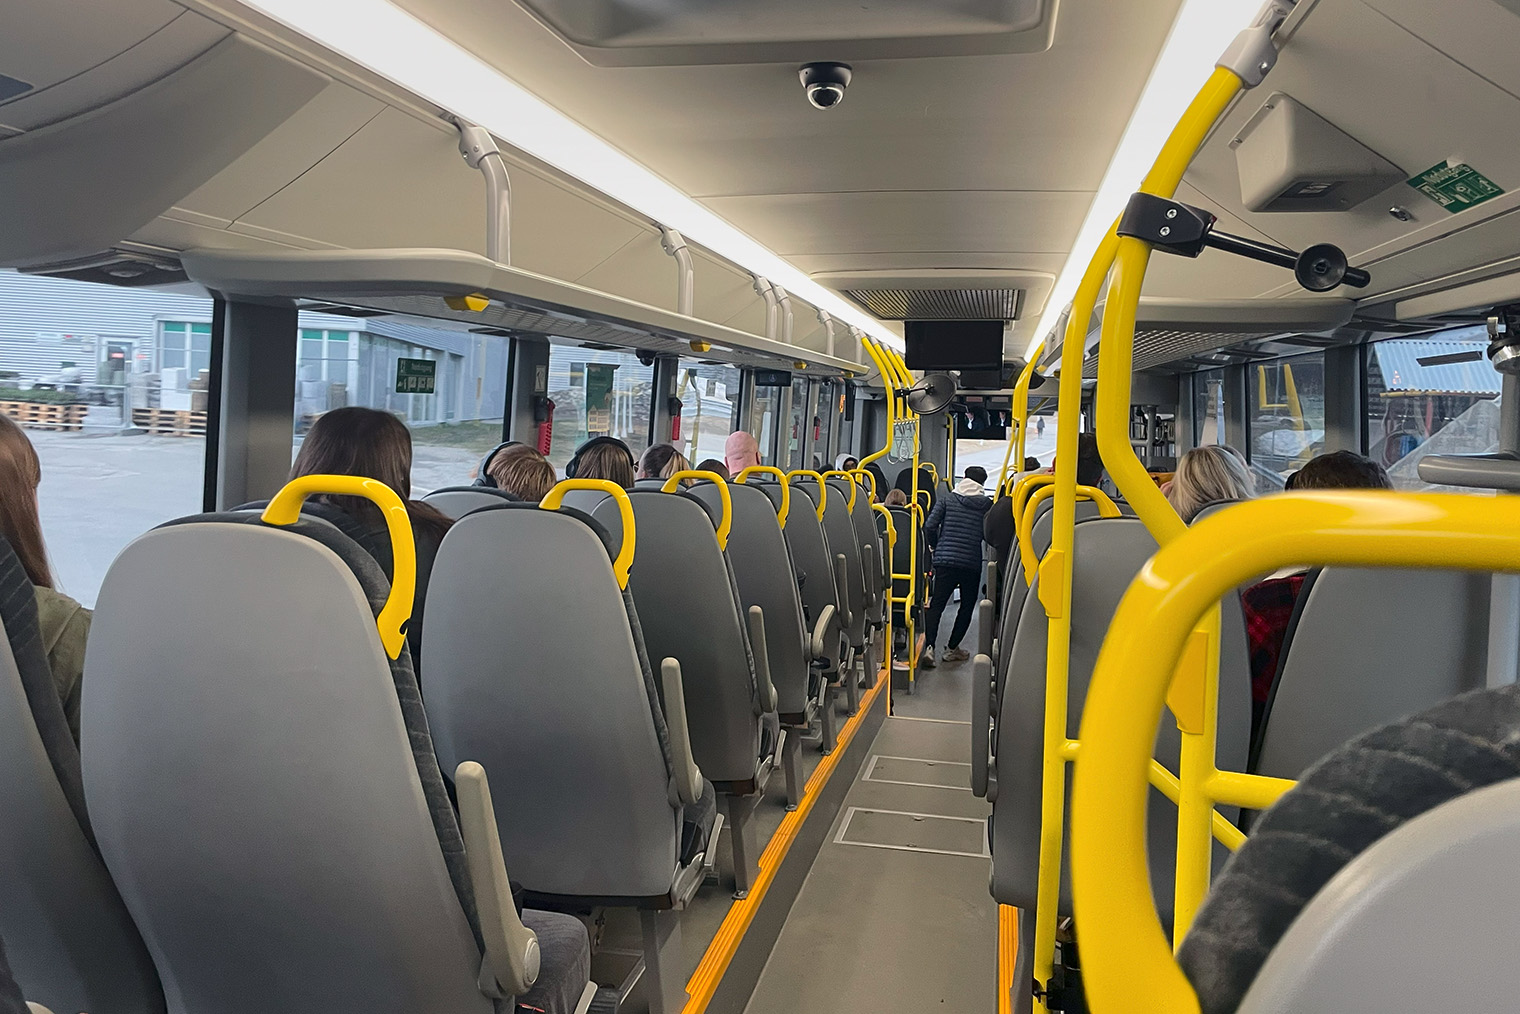 Типичная картина для норвежского автобуса — люди сидят по одному